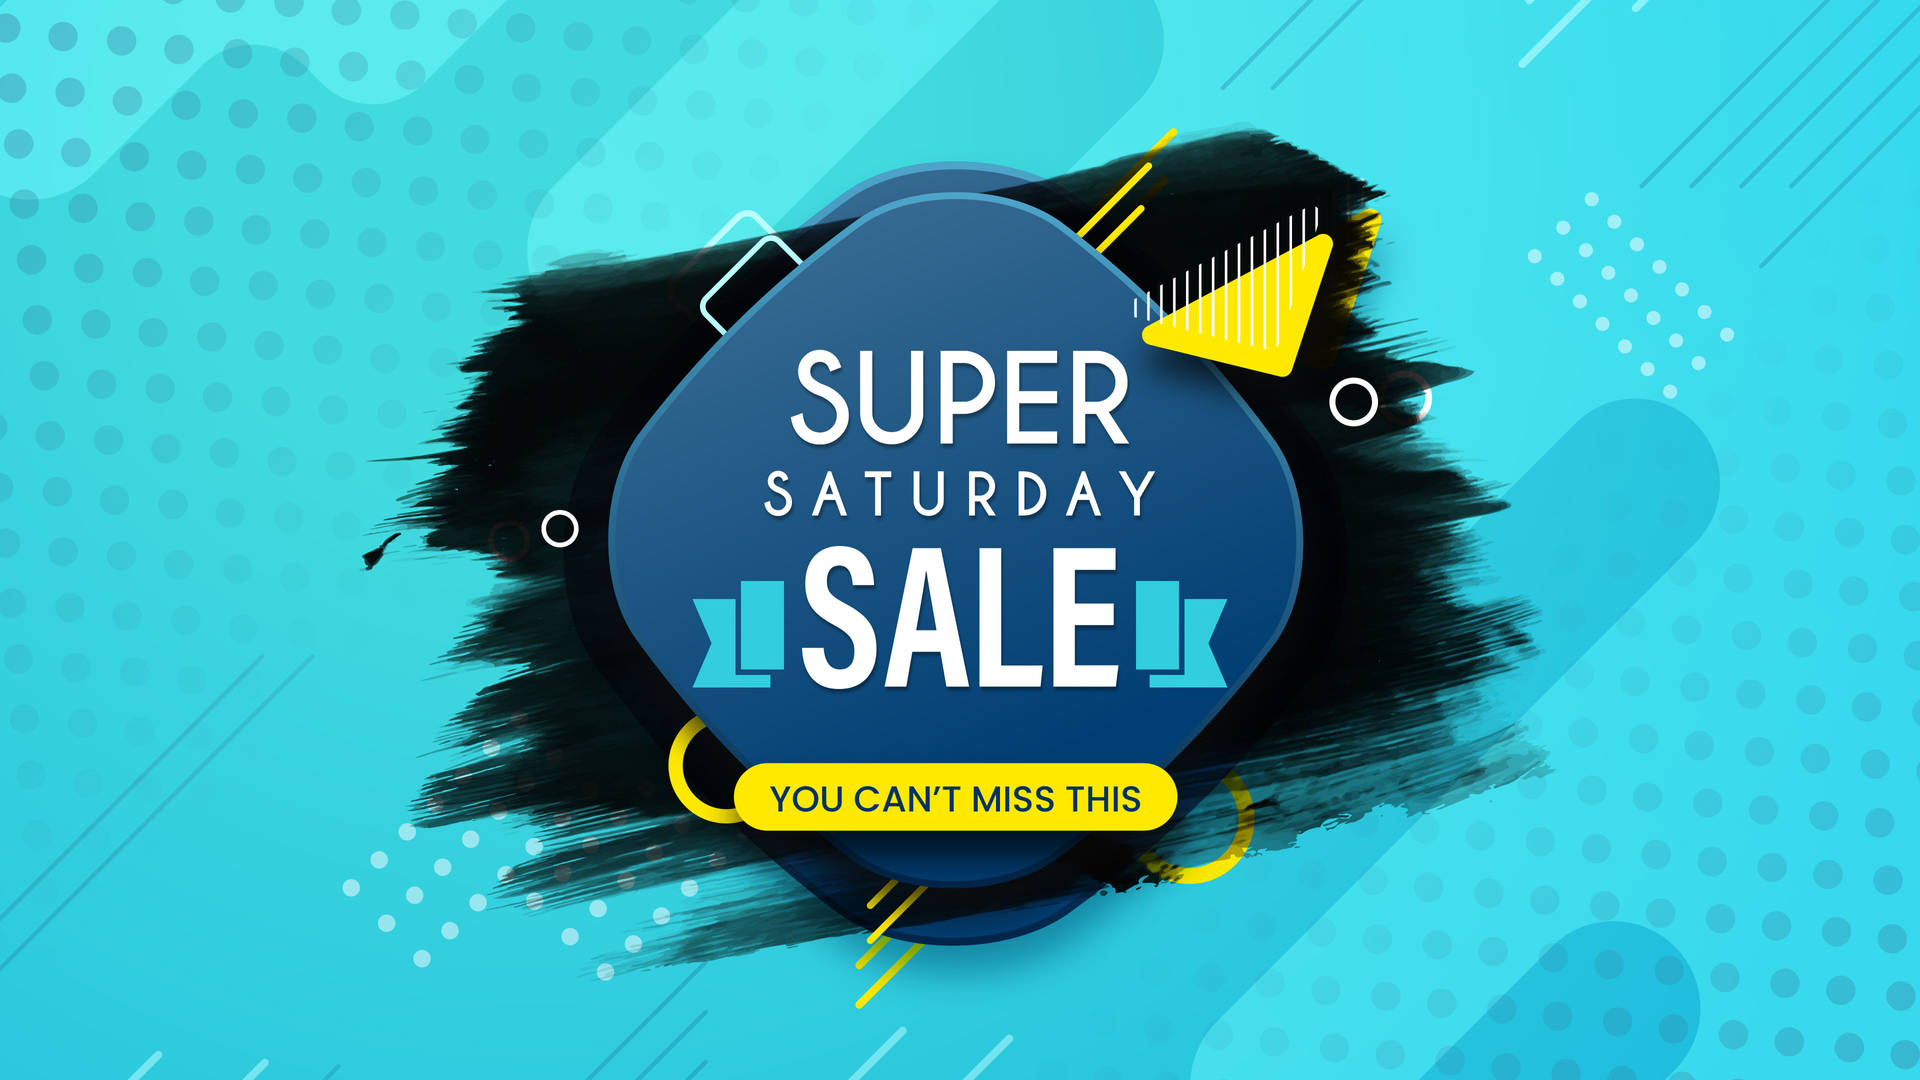 Unmissable Super Saturday Sale